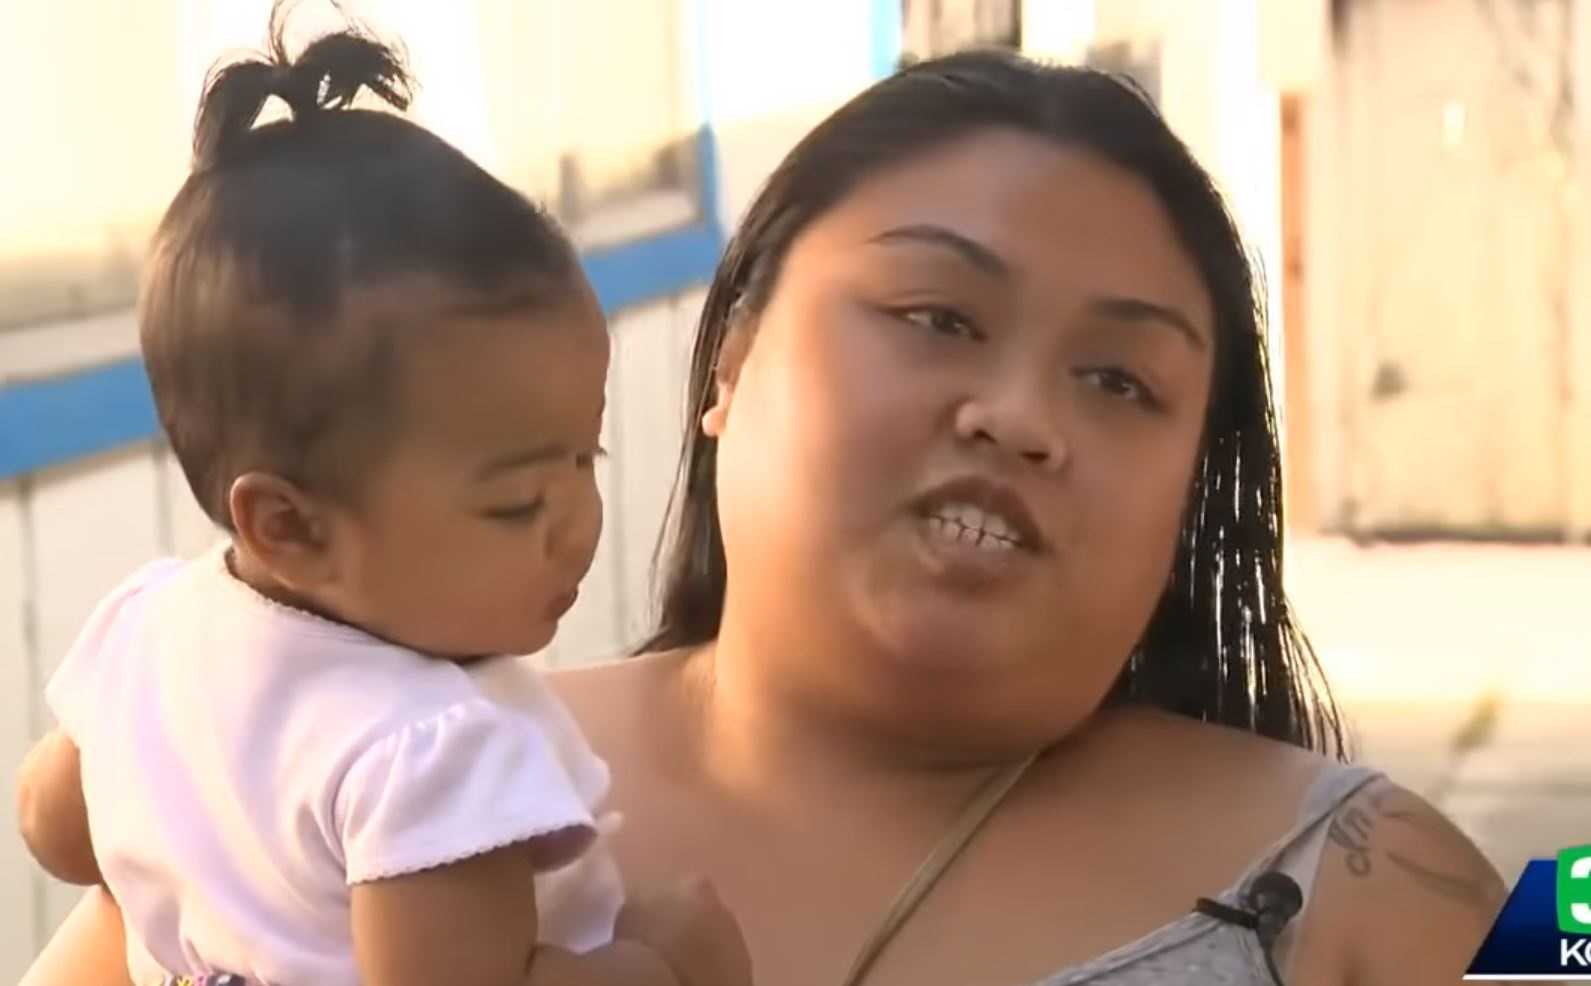 Matka opisuje jak pitbull ciągnie jej córeczkę za pieluszkę ratując w ten sposób dziecko przed pożarem